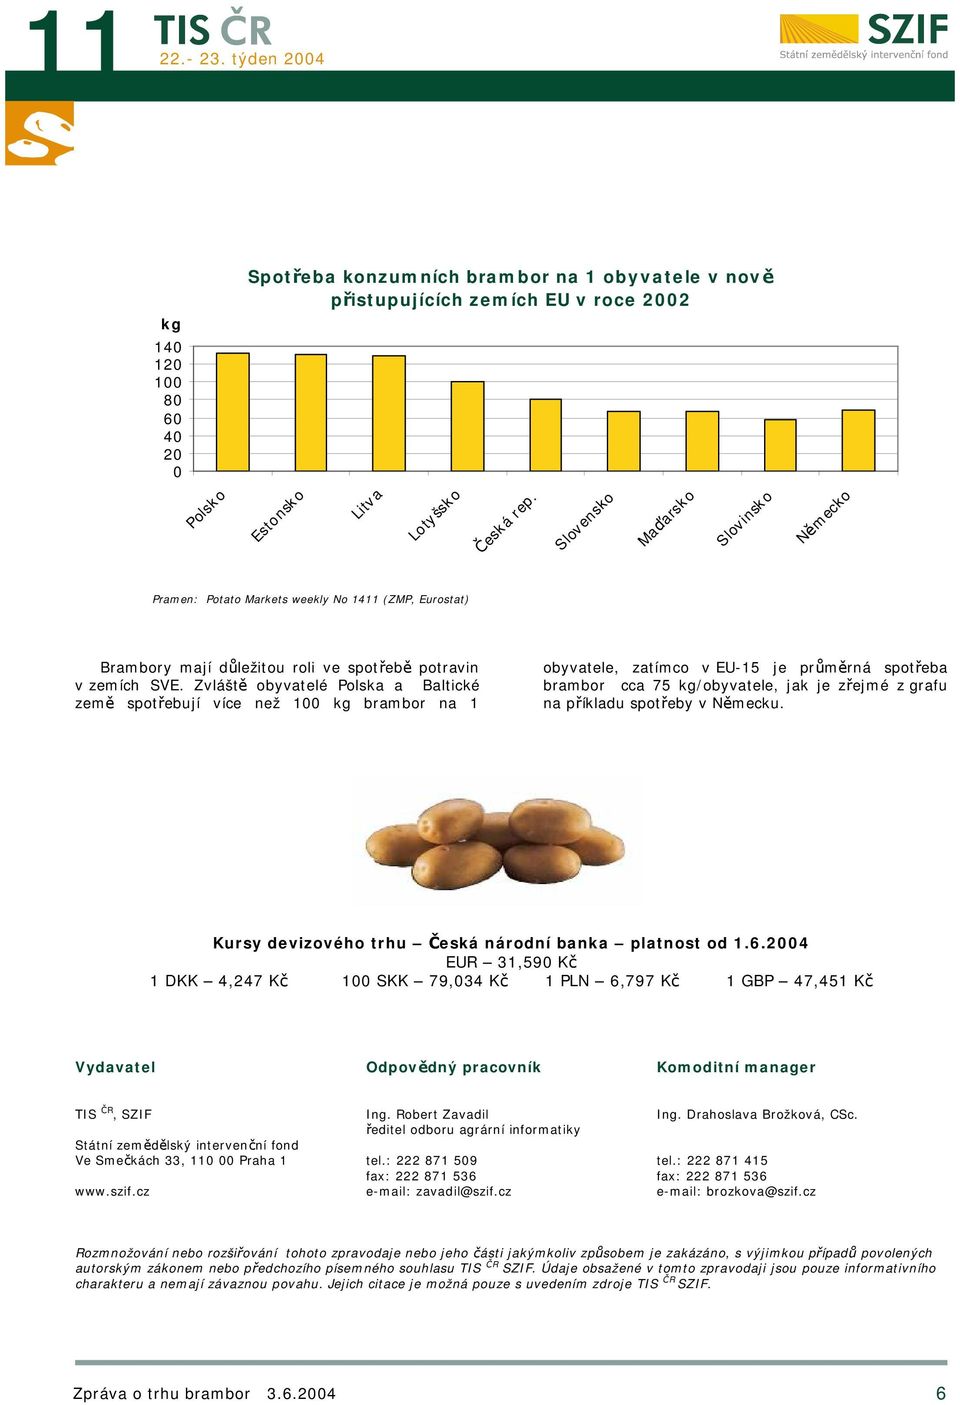 Zvláště obyvatelé Polska a Baltické země spotřebují více než 100 kg brambor na 1 obyvatele, zatímco v EU-15 je průměrná spotřeba brambor cca 75 kg/obyvatele, jak je zřejmé z grafu na příkladu